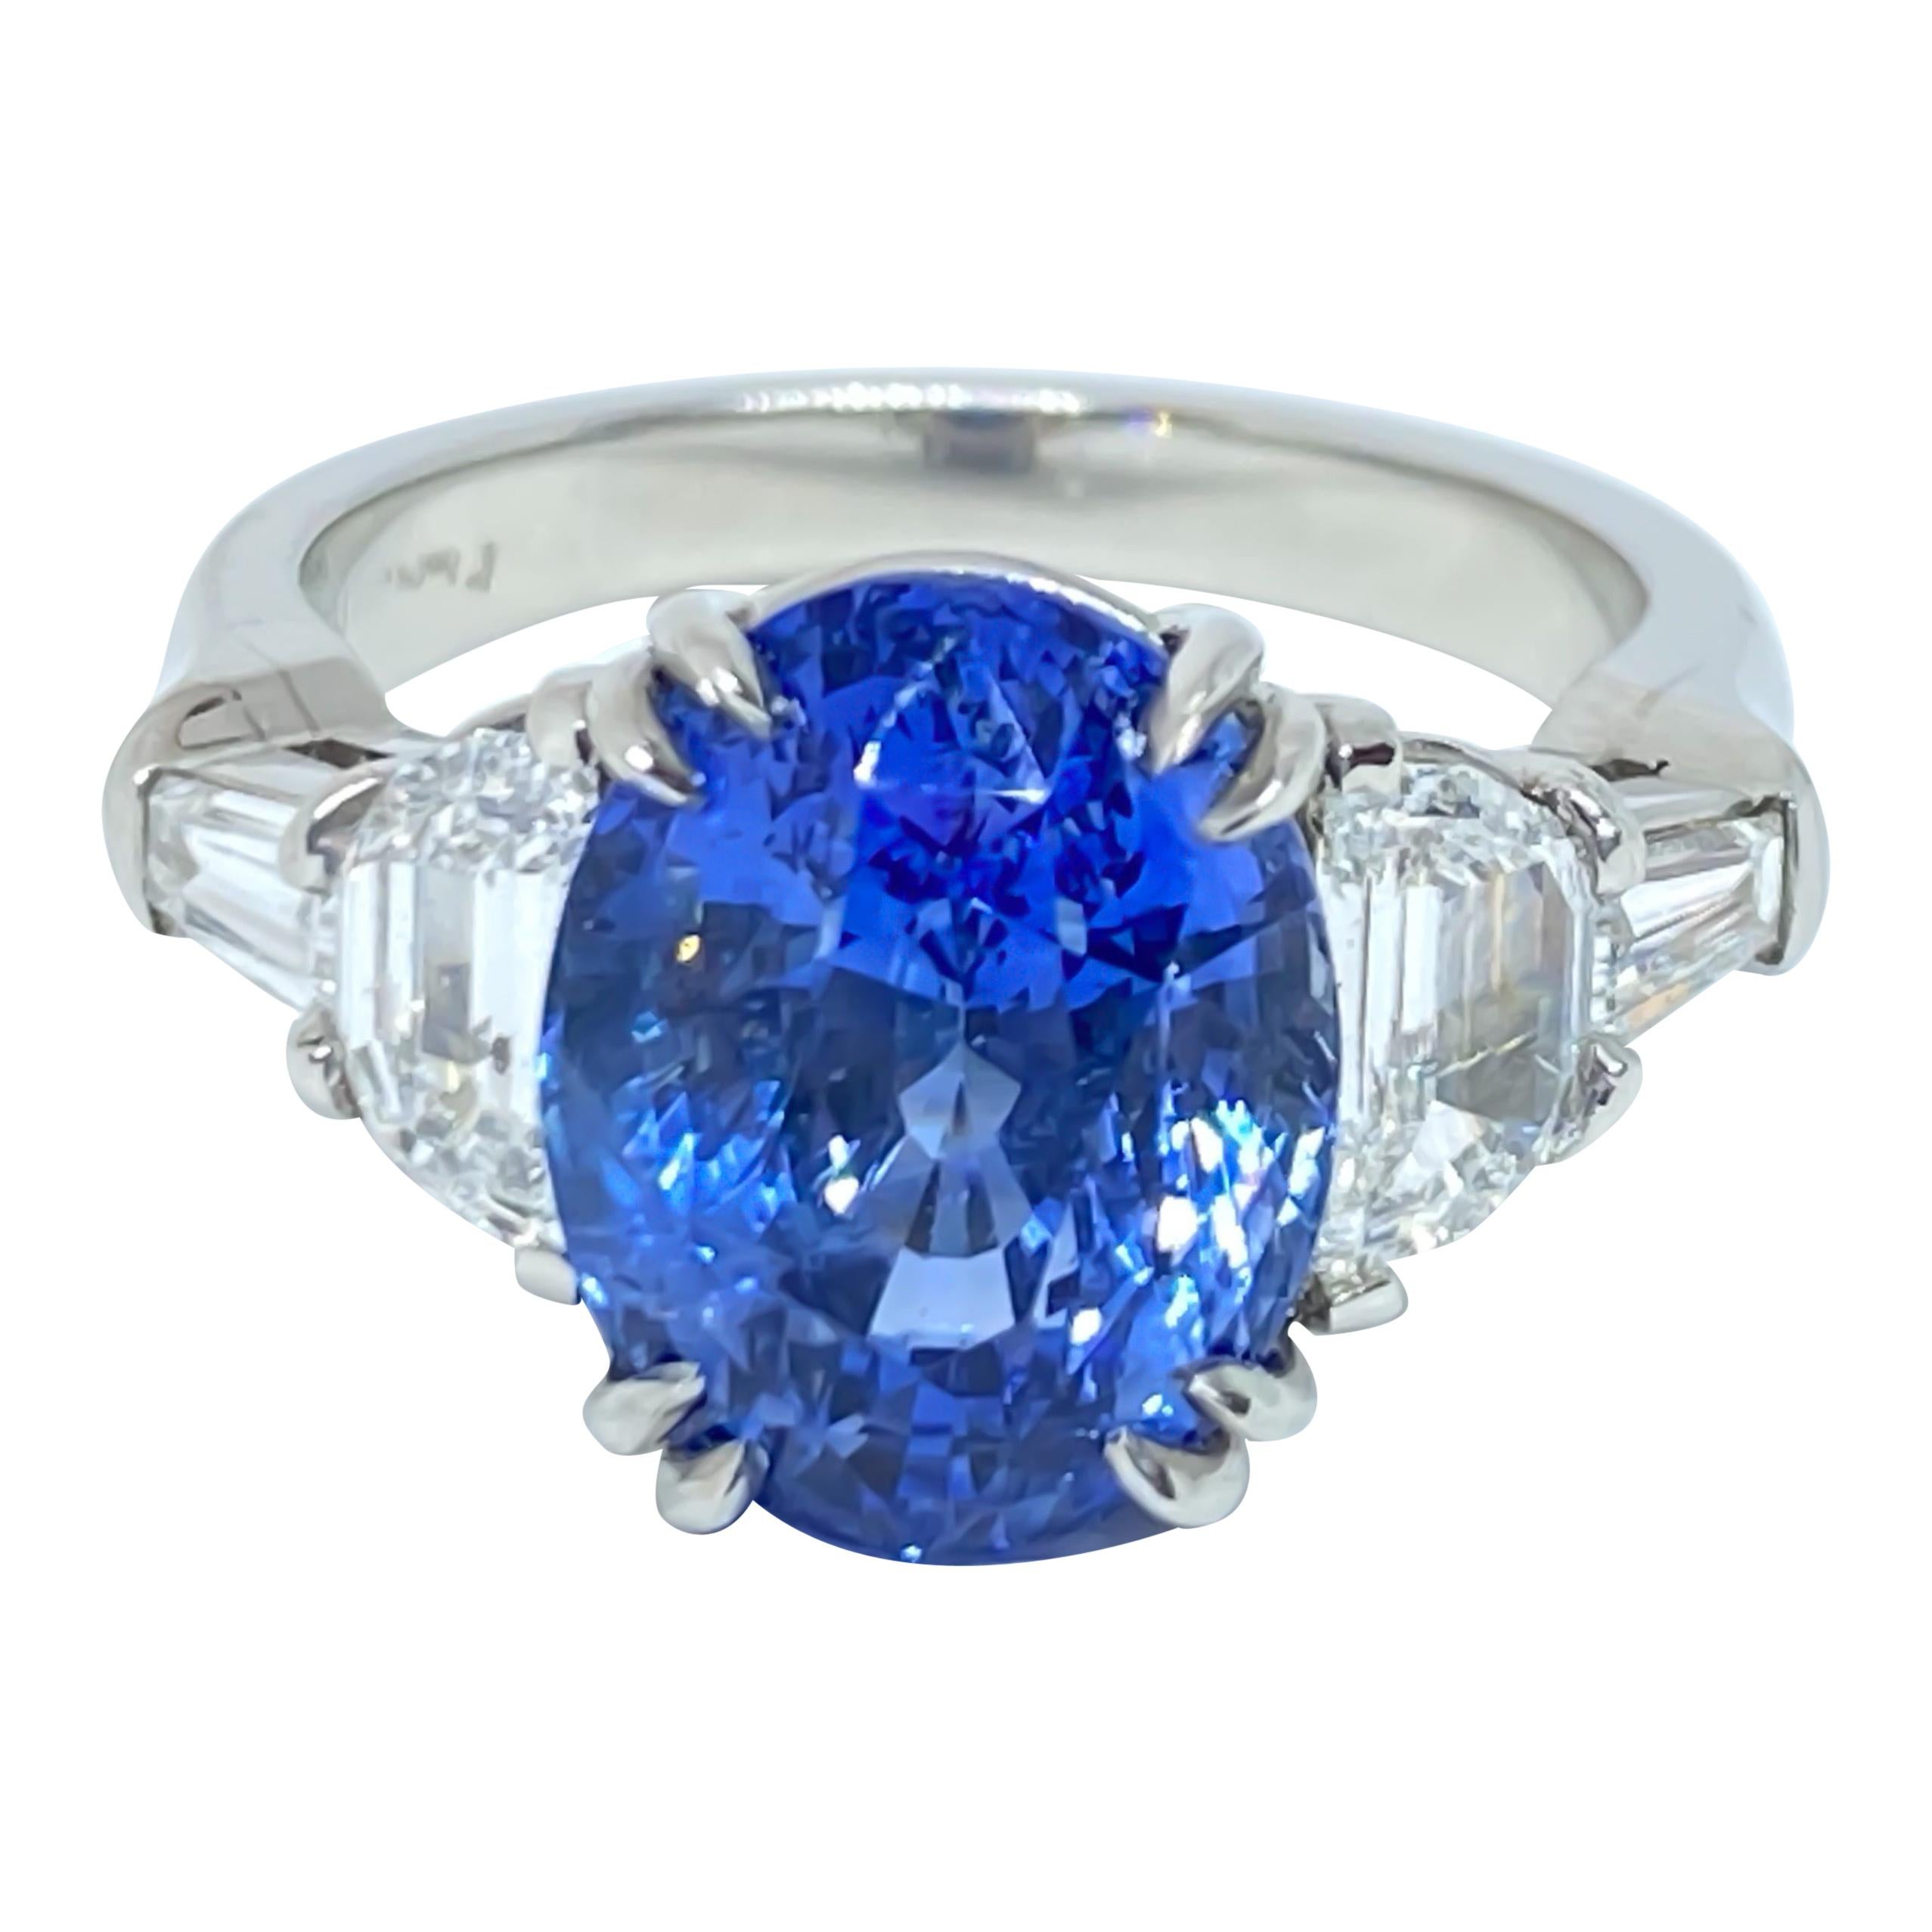 Bague en saphir bleu ovale naturel et diamant de 7,11 carats monté sur platine, faite à la main